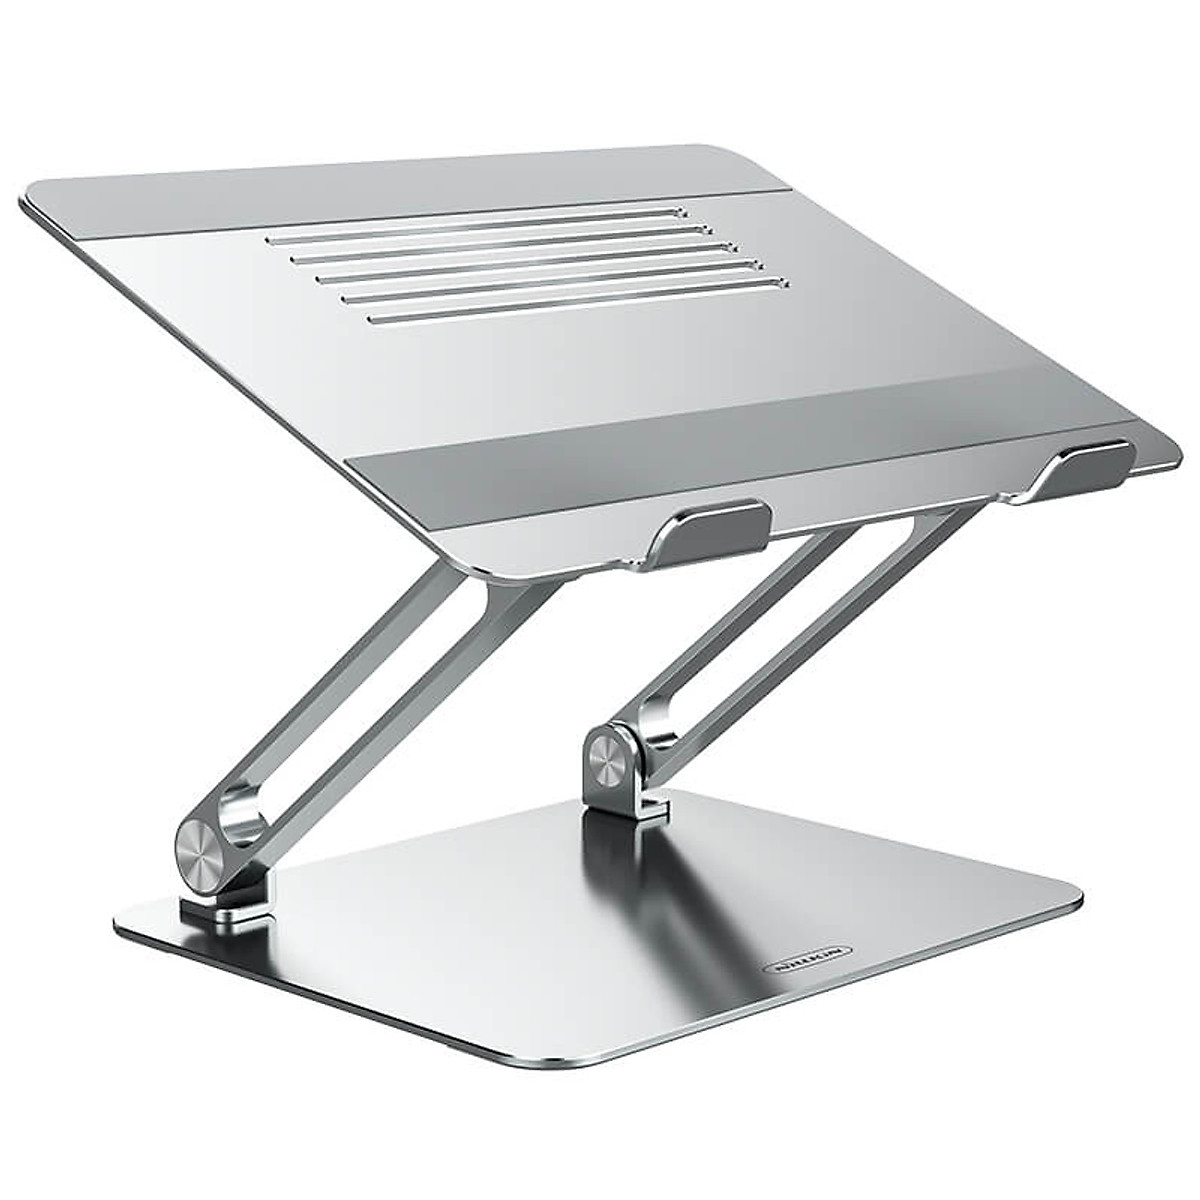 Giá đỡ tản nhiệt cho Macbook Laptop hiệu Nillkin ProDesk Adjustable Laptop Stand